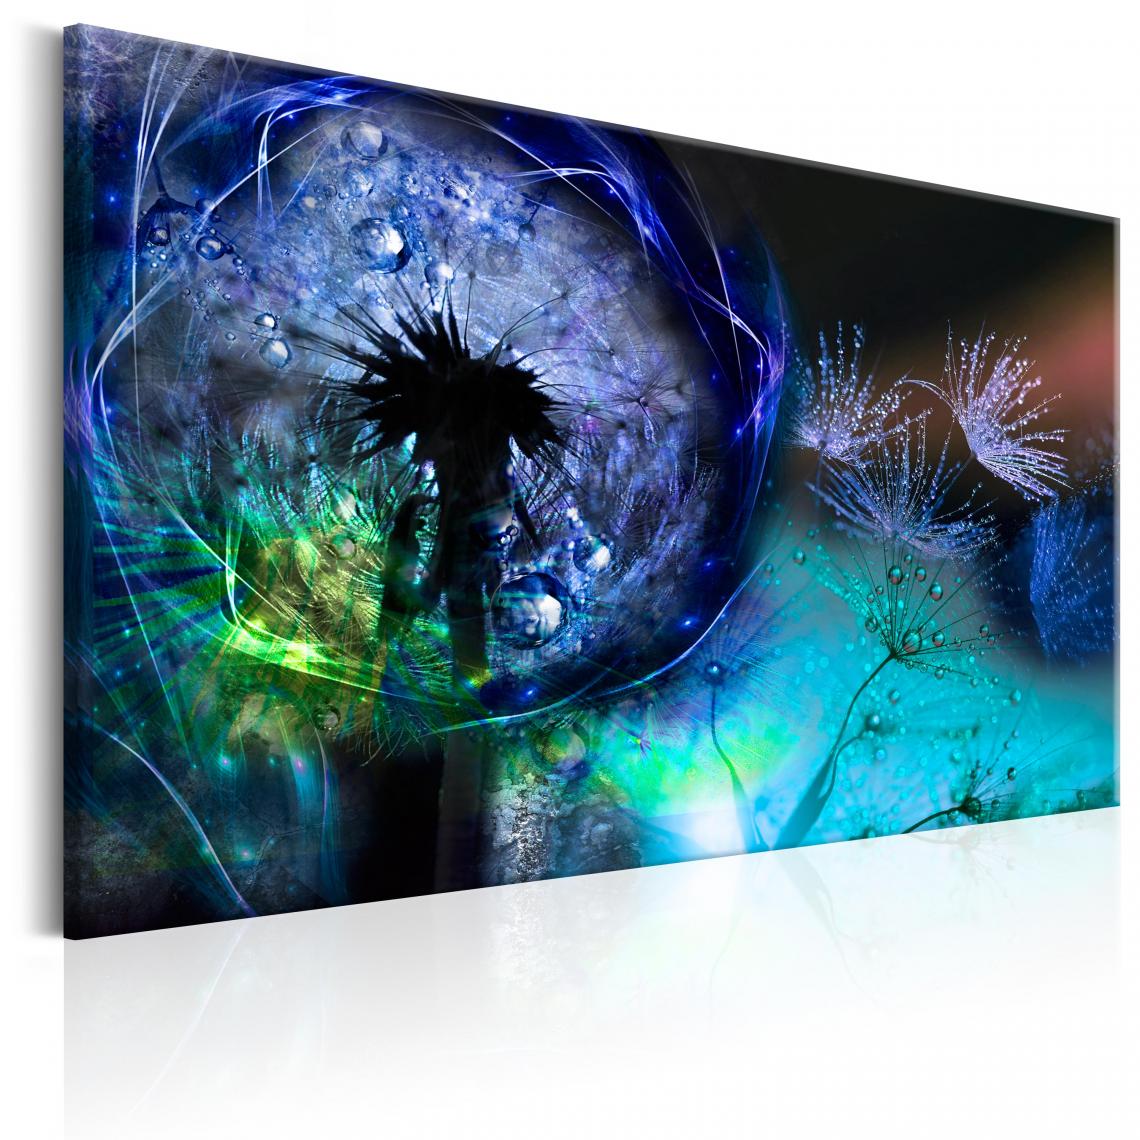 Decoshop26 - Tableau sur toile décoration murale image imprimée cadre en bois à suspendre Pissenlits: Lueur bleue 120x80 cm 11_0005120 - Tableaux, peintures